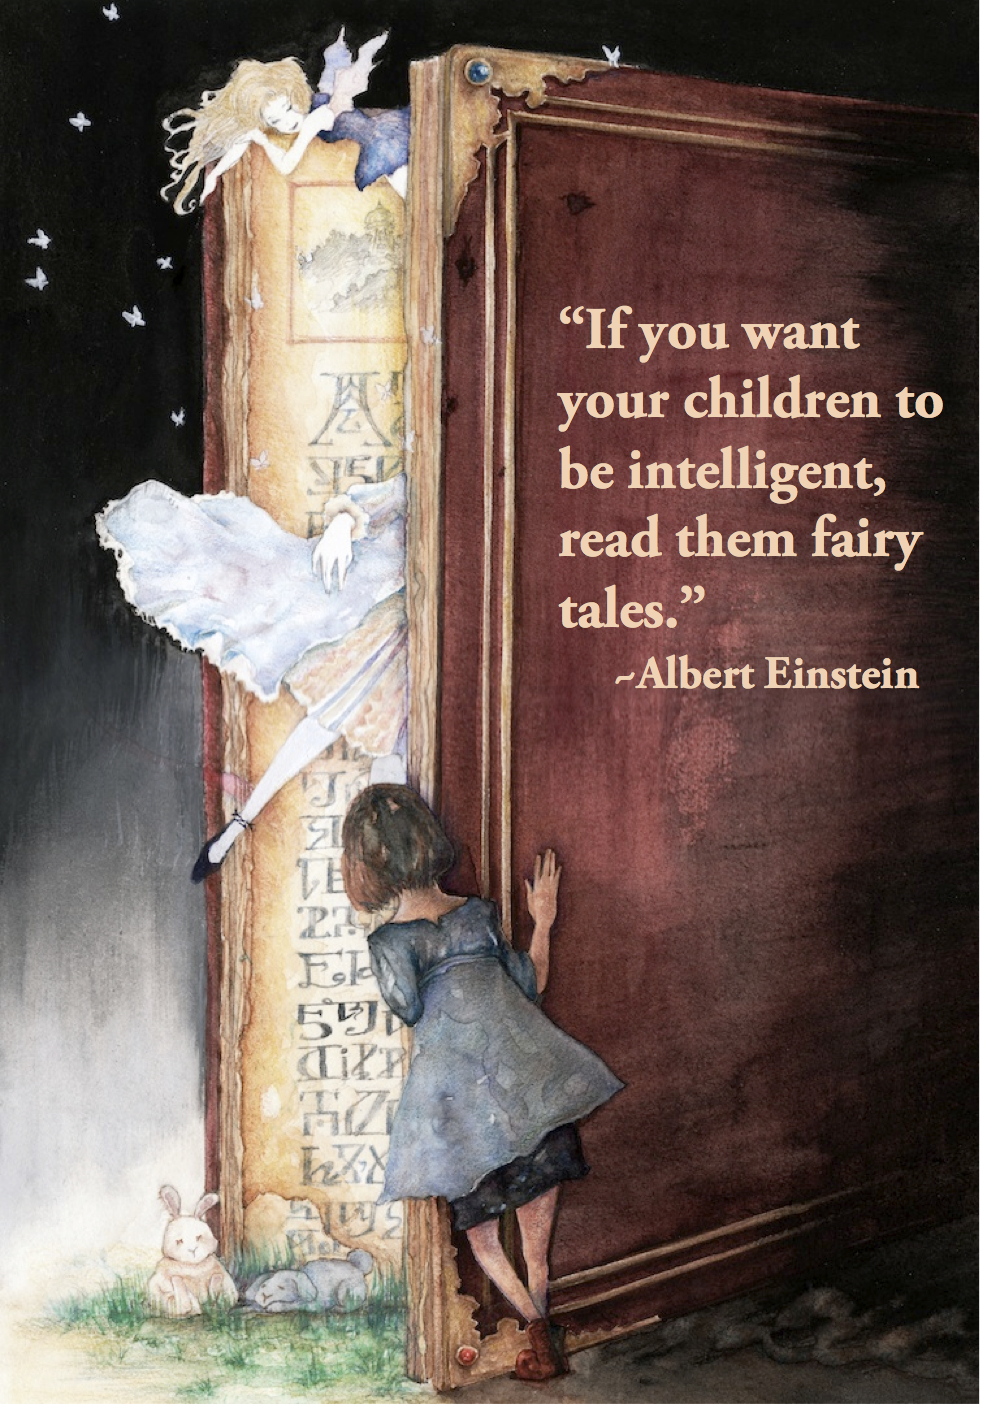 Albert Einstein on Fairy Tales via Pearls of Joy